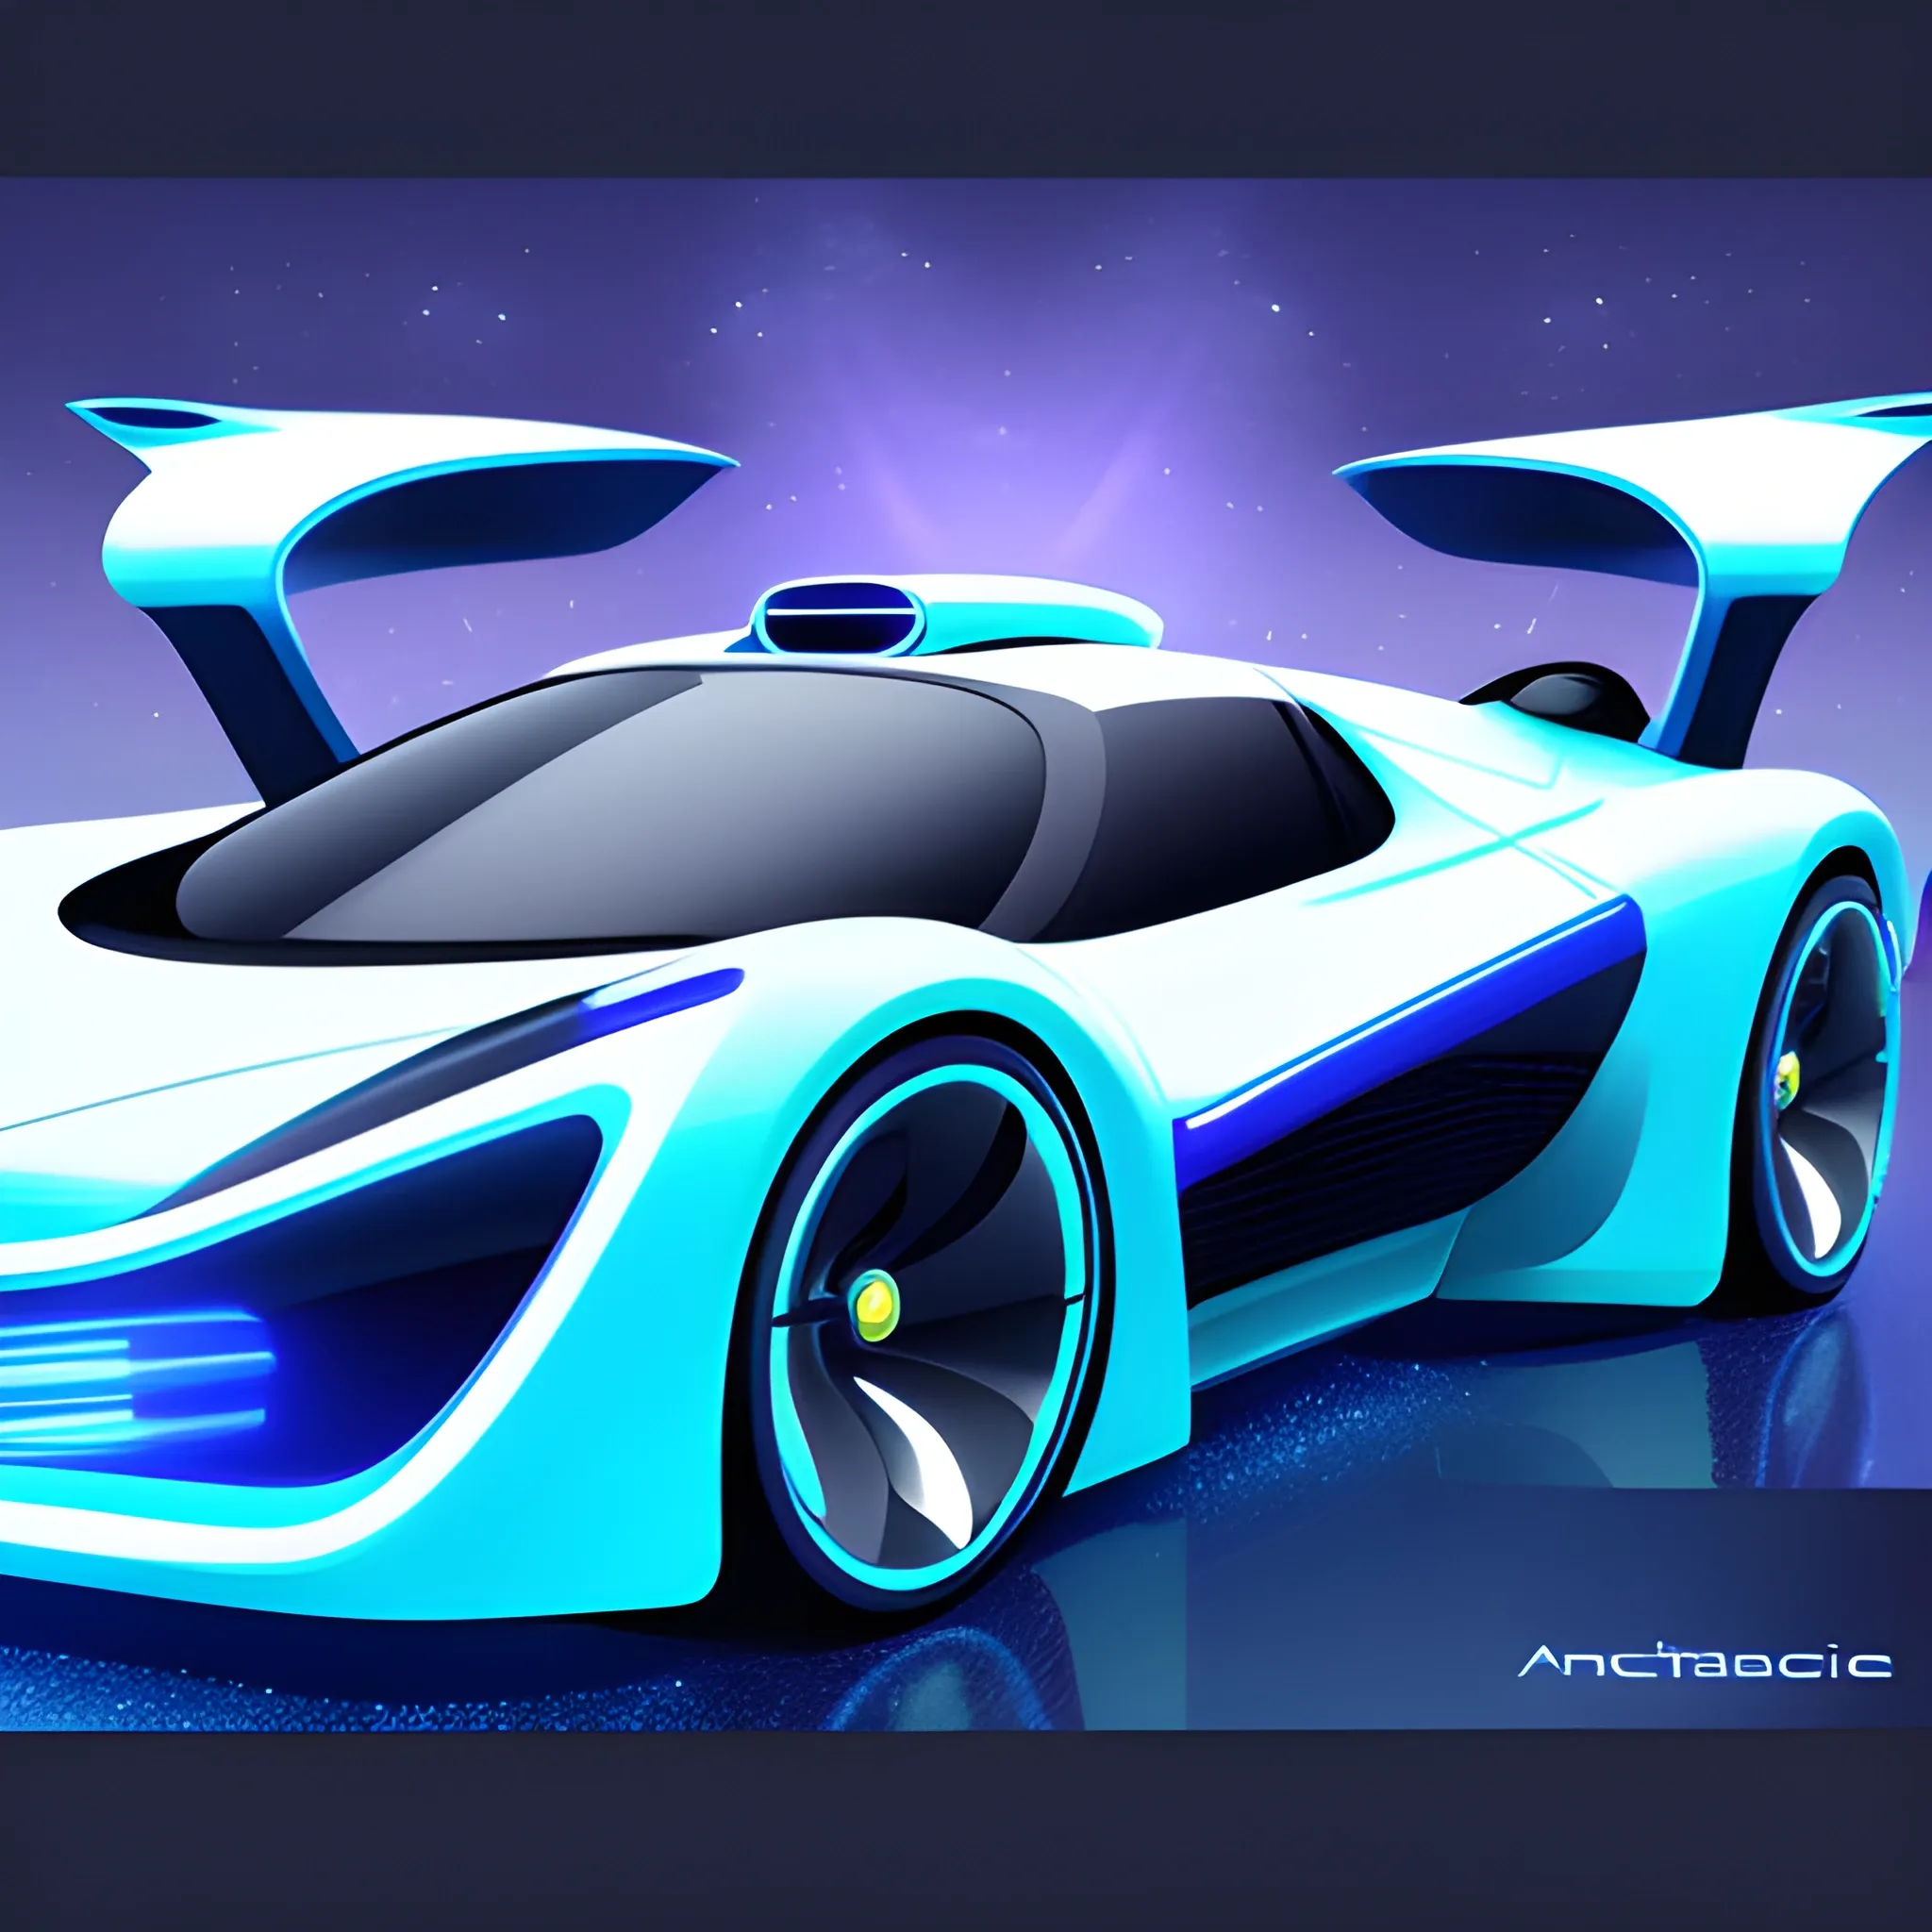 A Futuristic Cars PPT Background